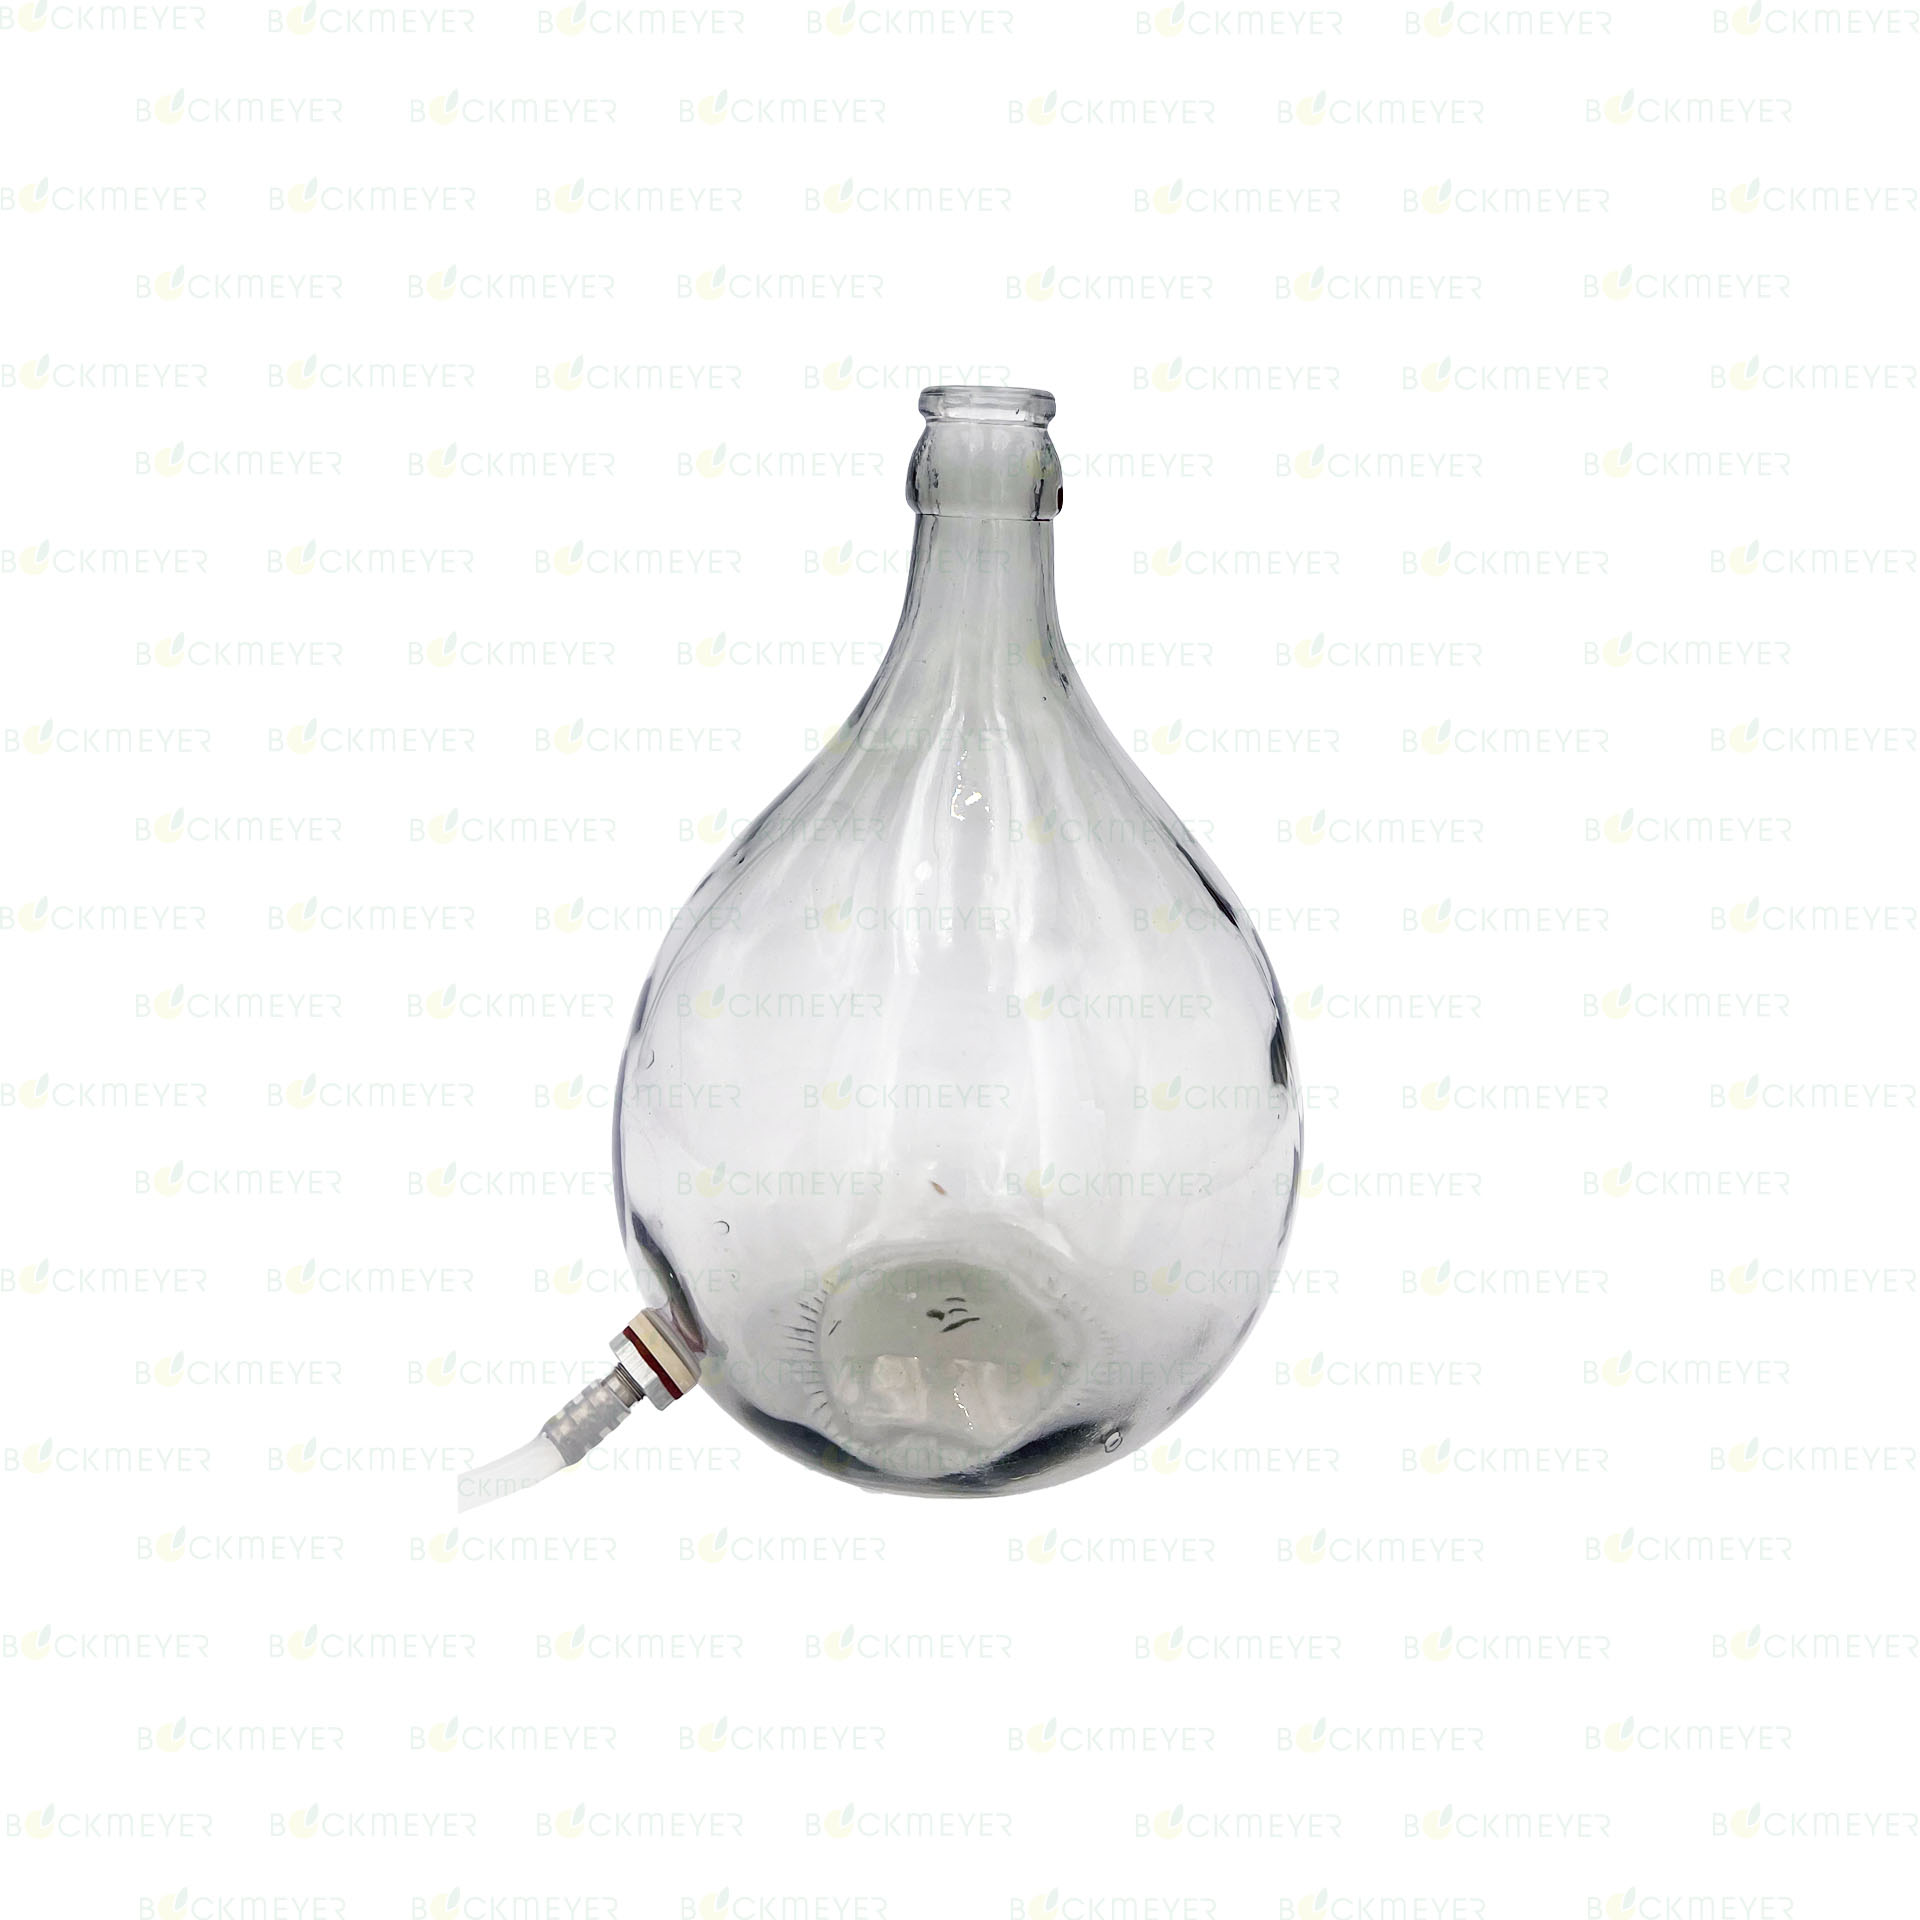 Glasballon 15,0 Liter, weiß, mit Edelstahl-Ablaß (OHNE VERSCHLUSS)